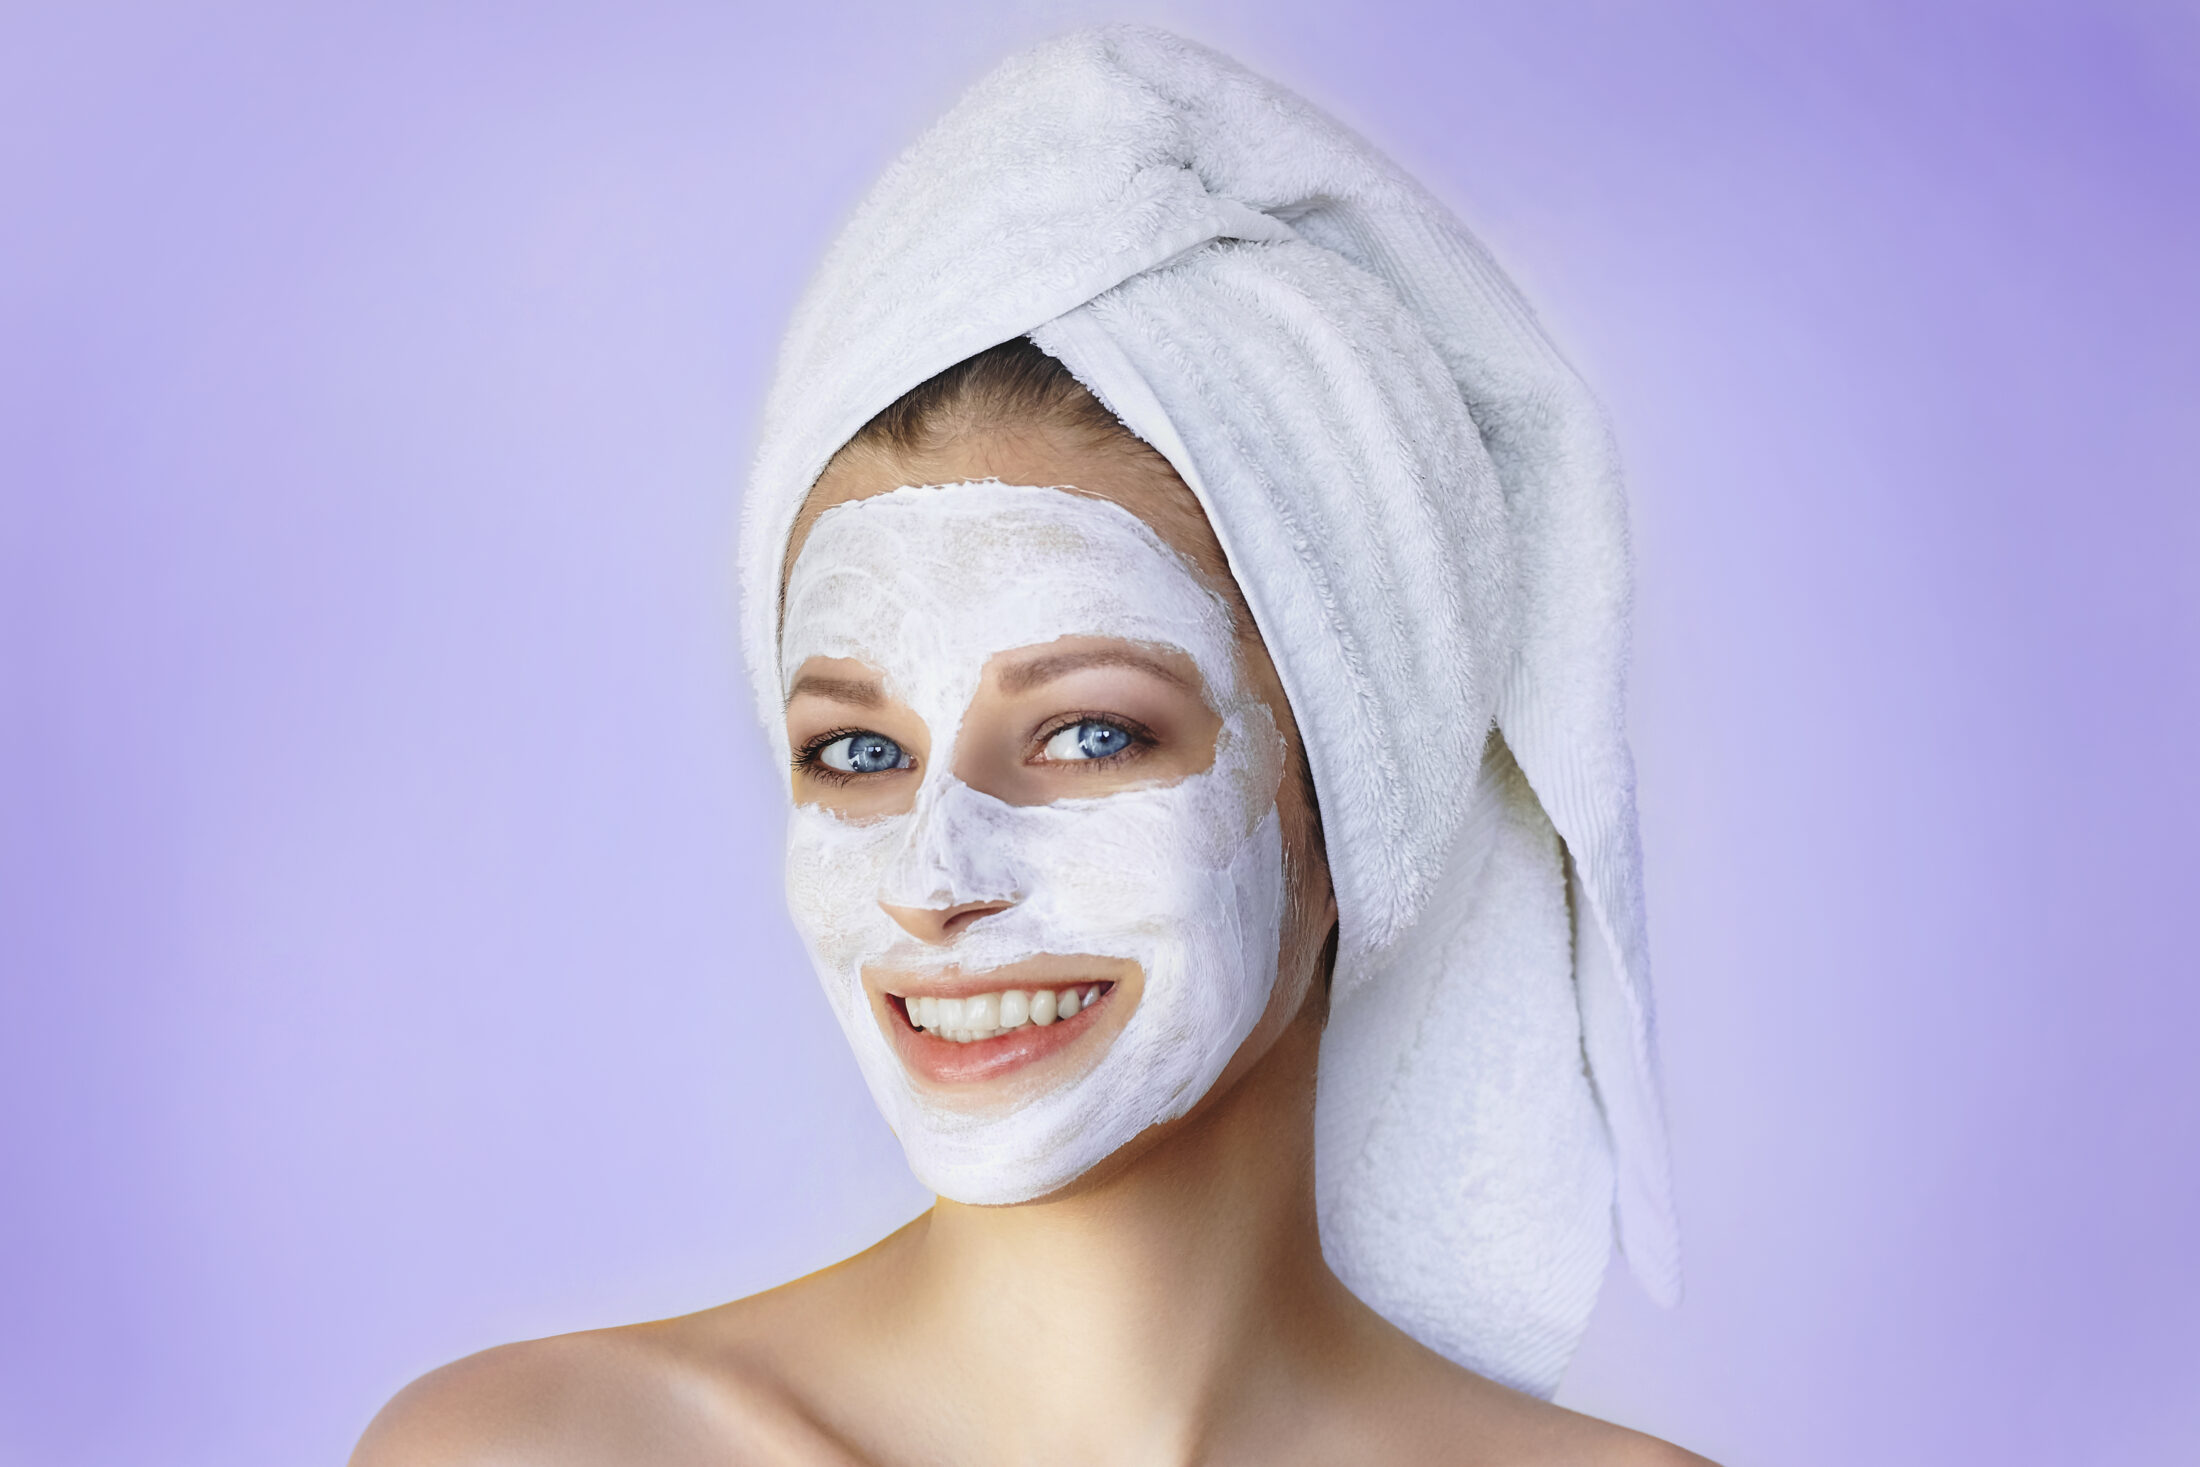 DIY Face Masks for Acne